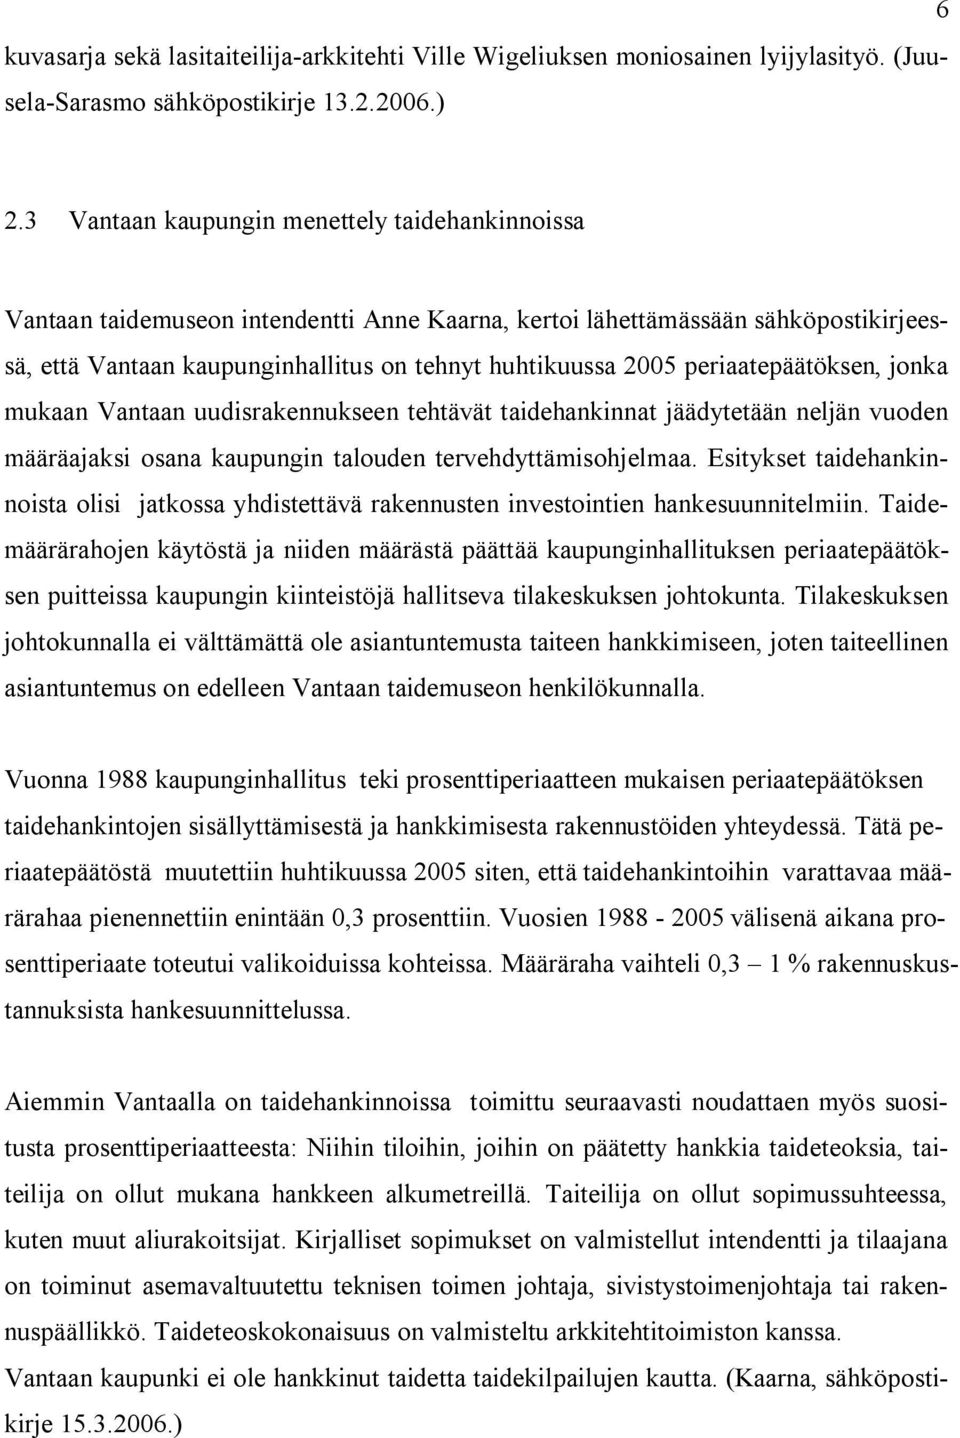 periaatepäätöksen, jonka mukaan Vantaan uudisrakennukseen tehtävät taidehankinnat jäädytetään neljän vuoden määräajaksi osana kaupungin talouden tervehdyttämisohjelmaa.